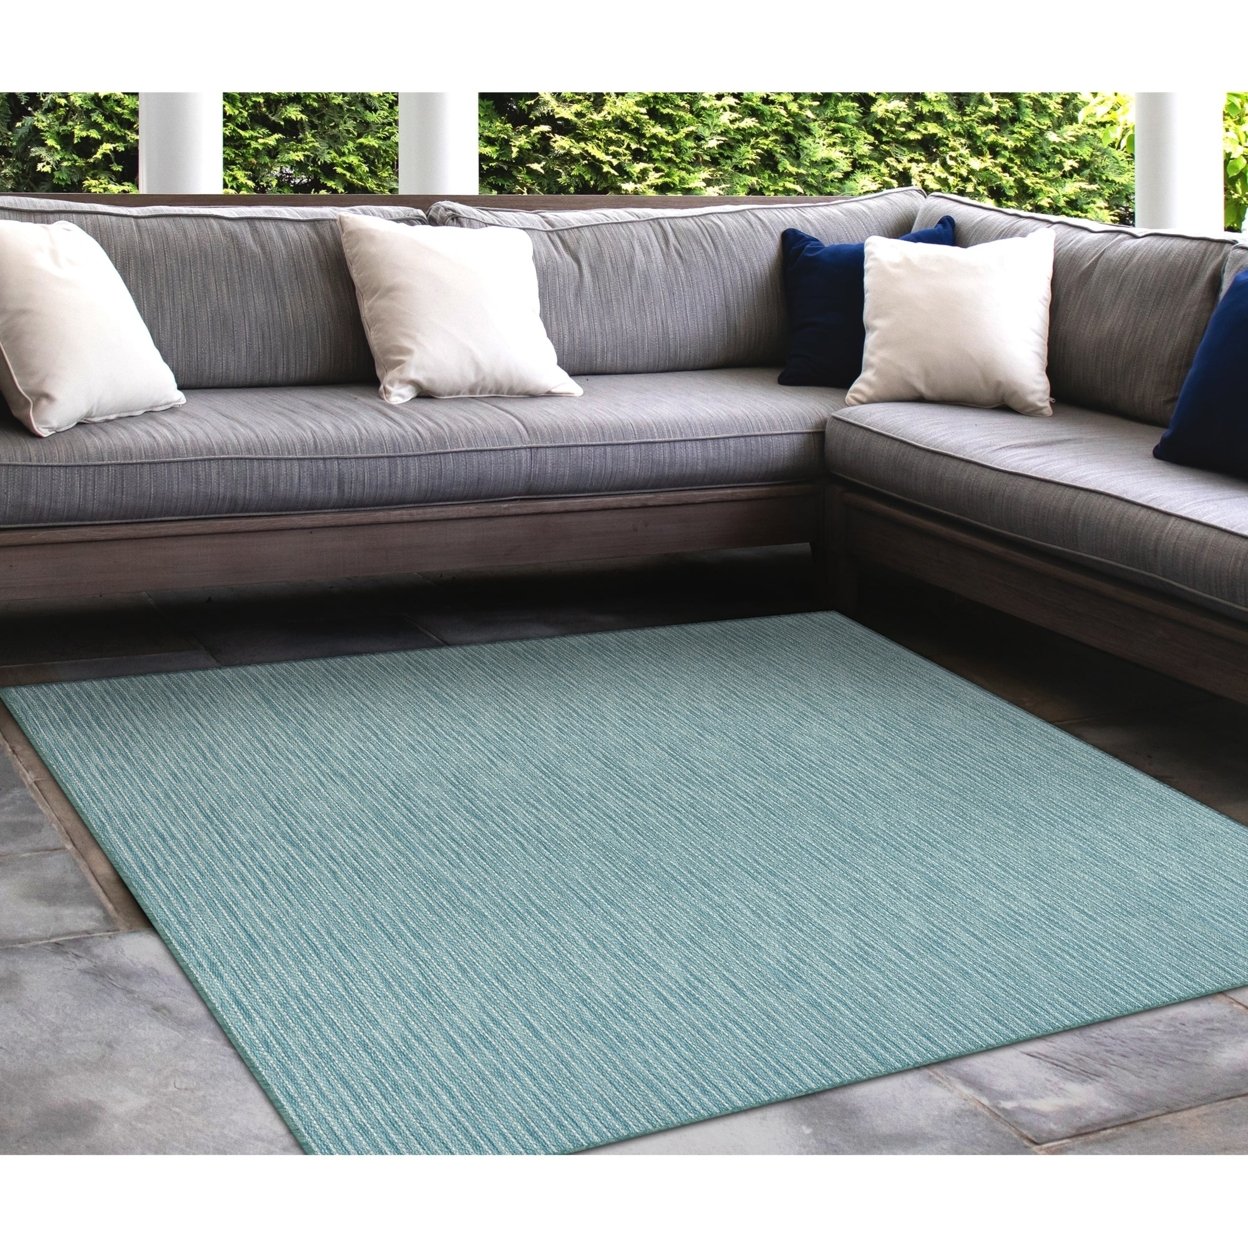 Liora Manne Carmel Texture Stripe Indoor Outdoor Area Rug Aqua - 7'10 Square